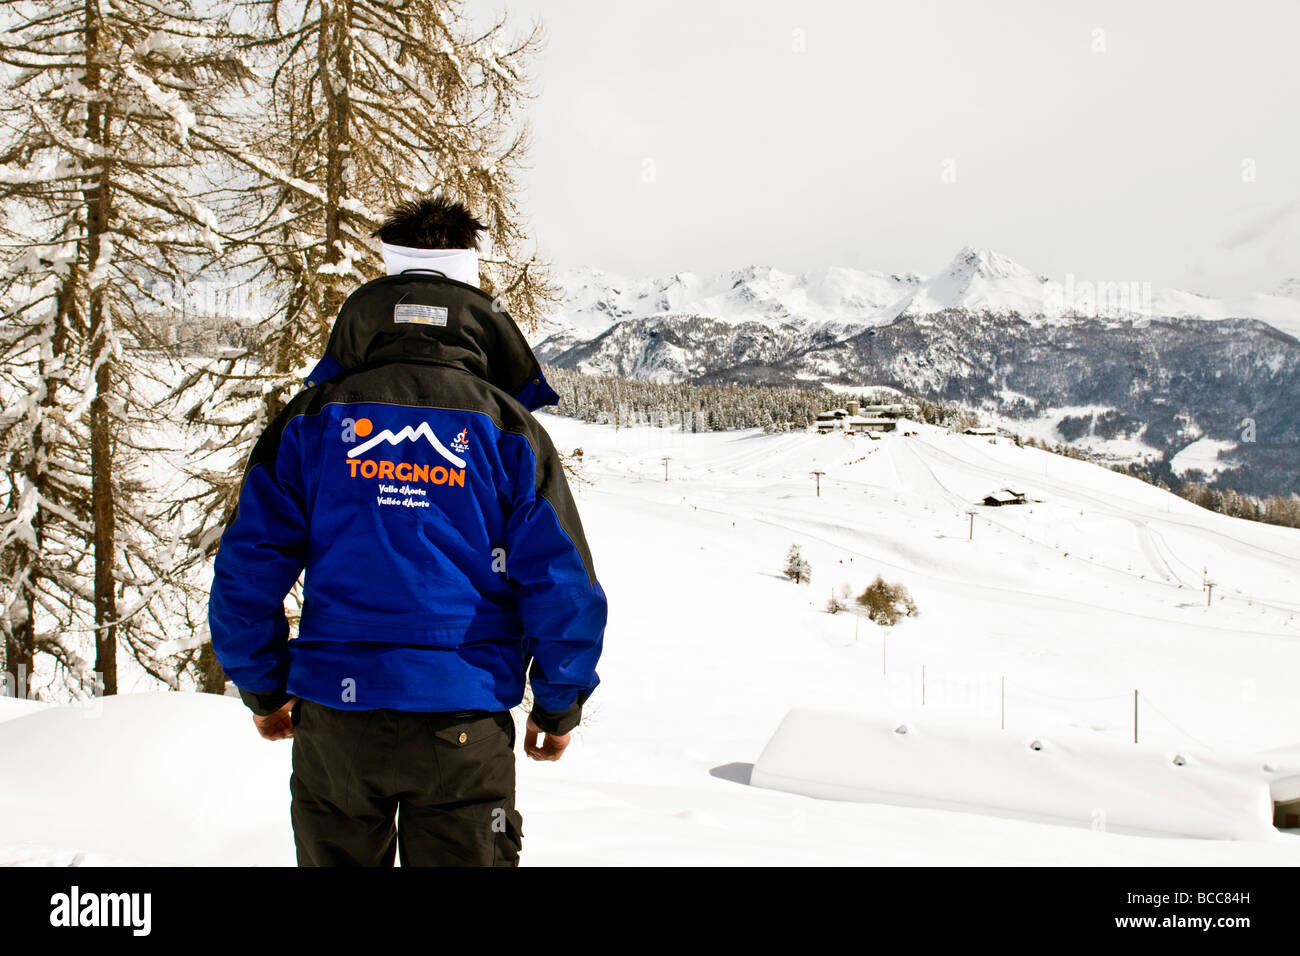 Ski instructor Torgnon Aosta Italy Stock Photo